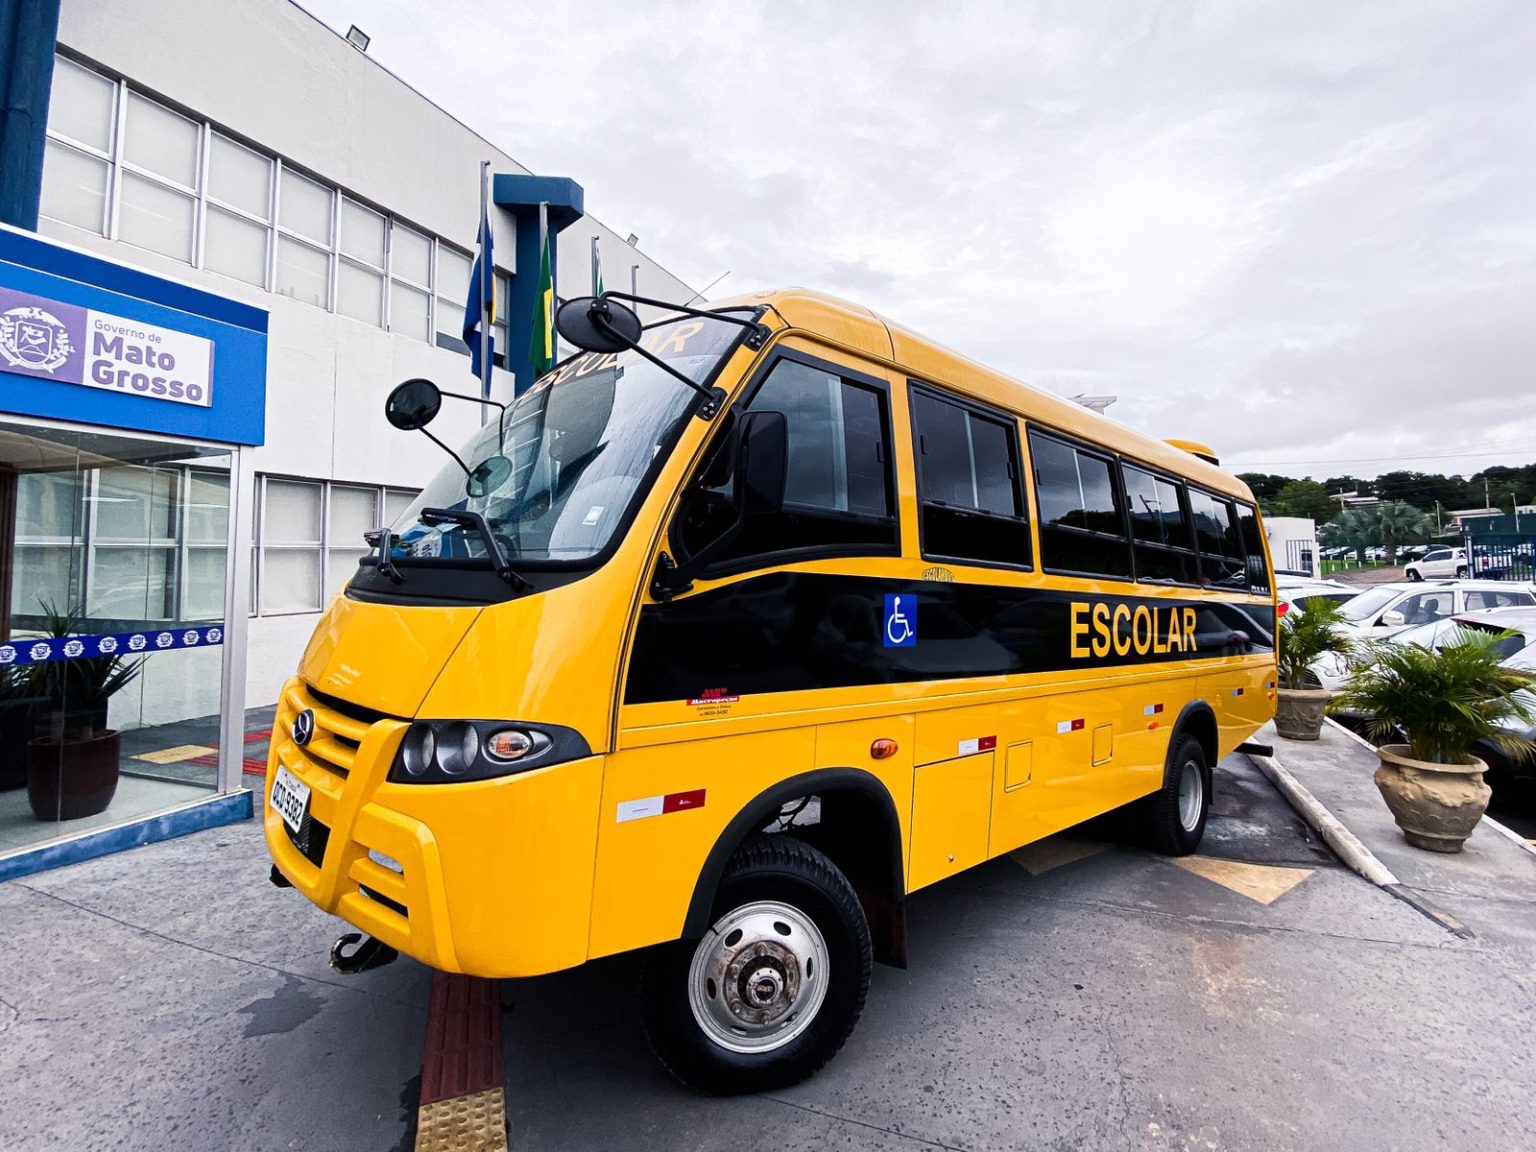 Os novos ônibus vão otimizar o transporte escolar com mais conforto e rapidez.